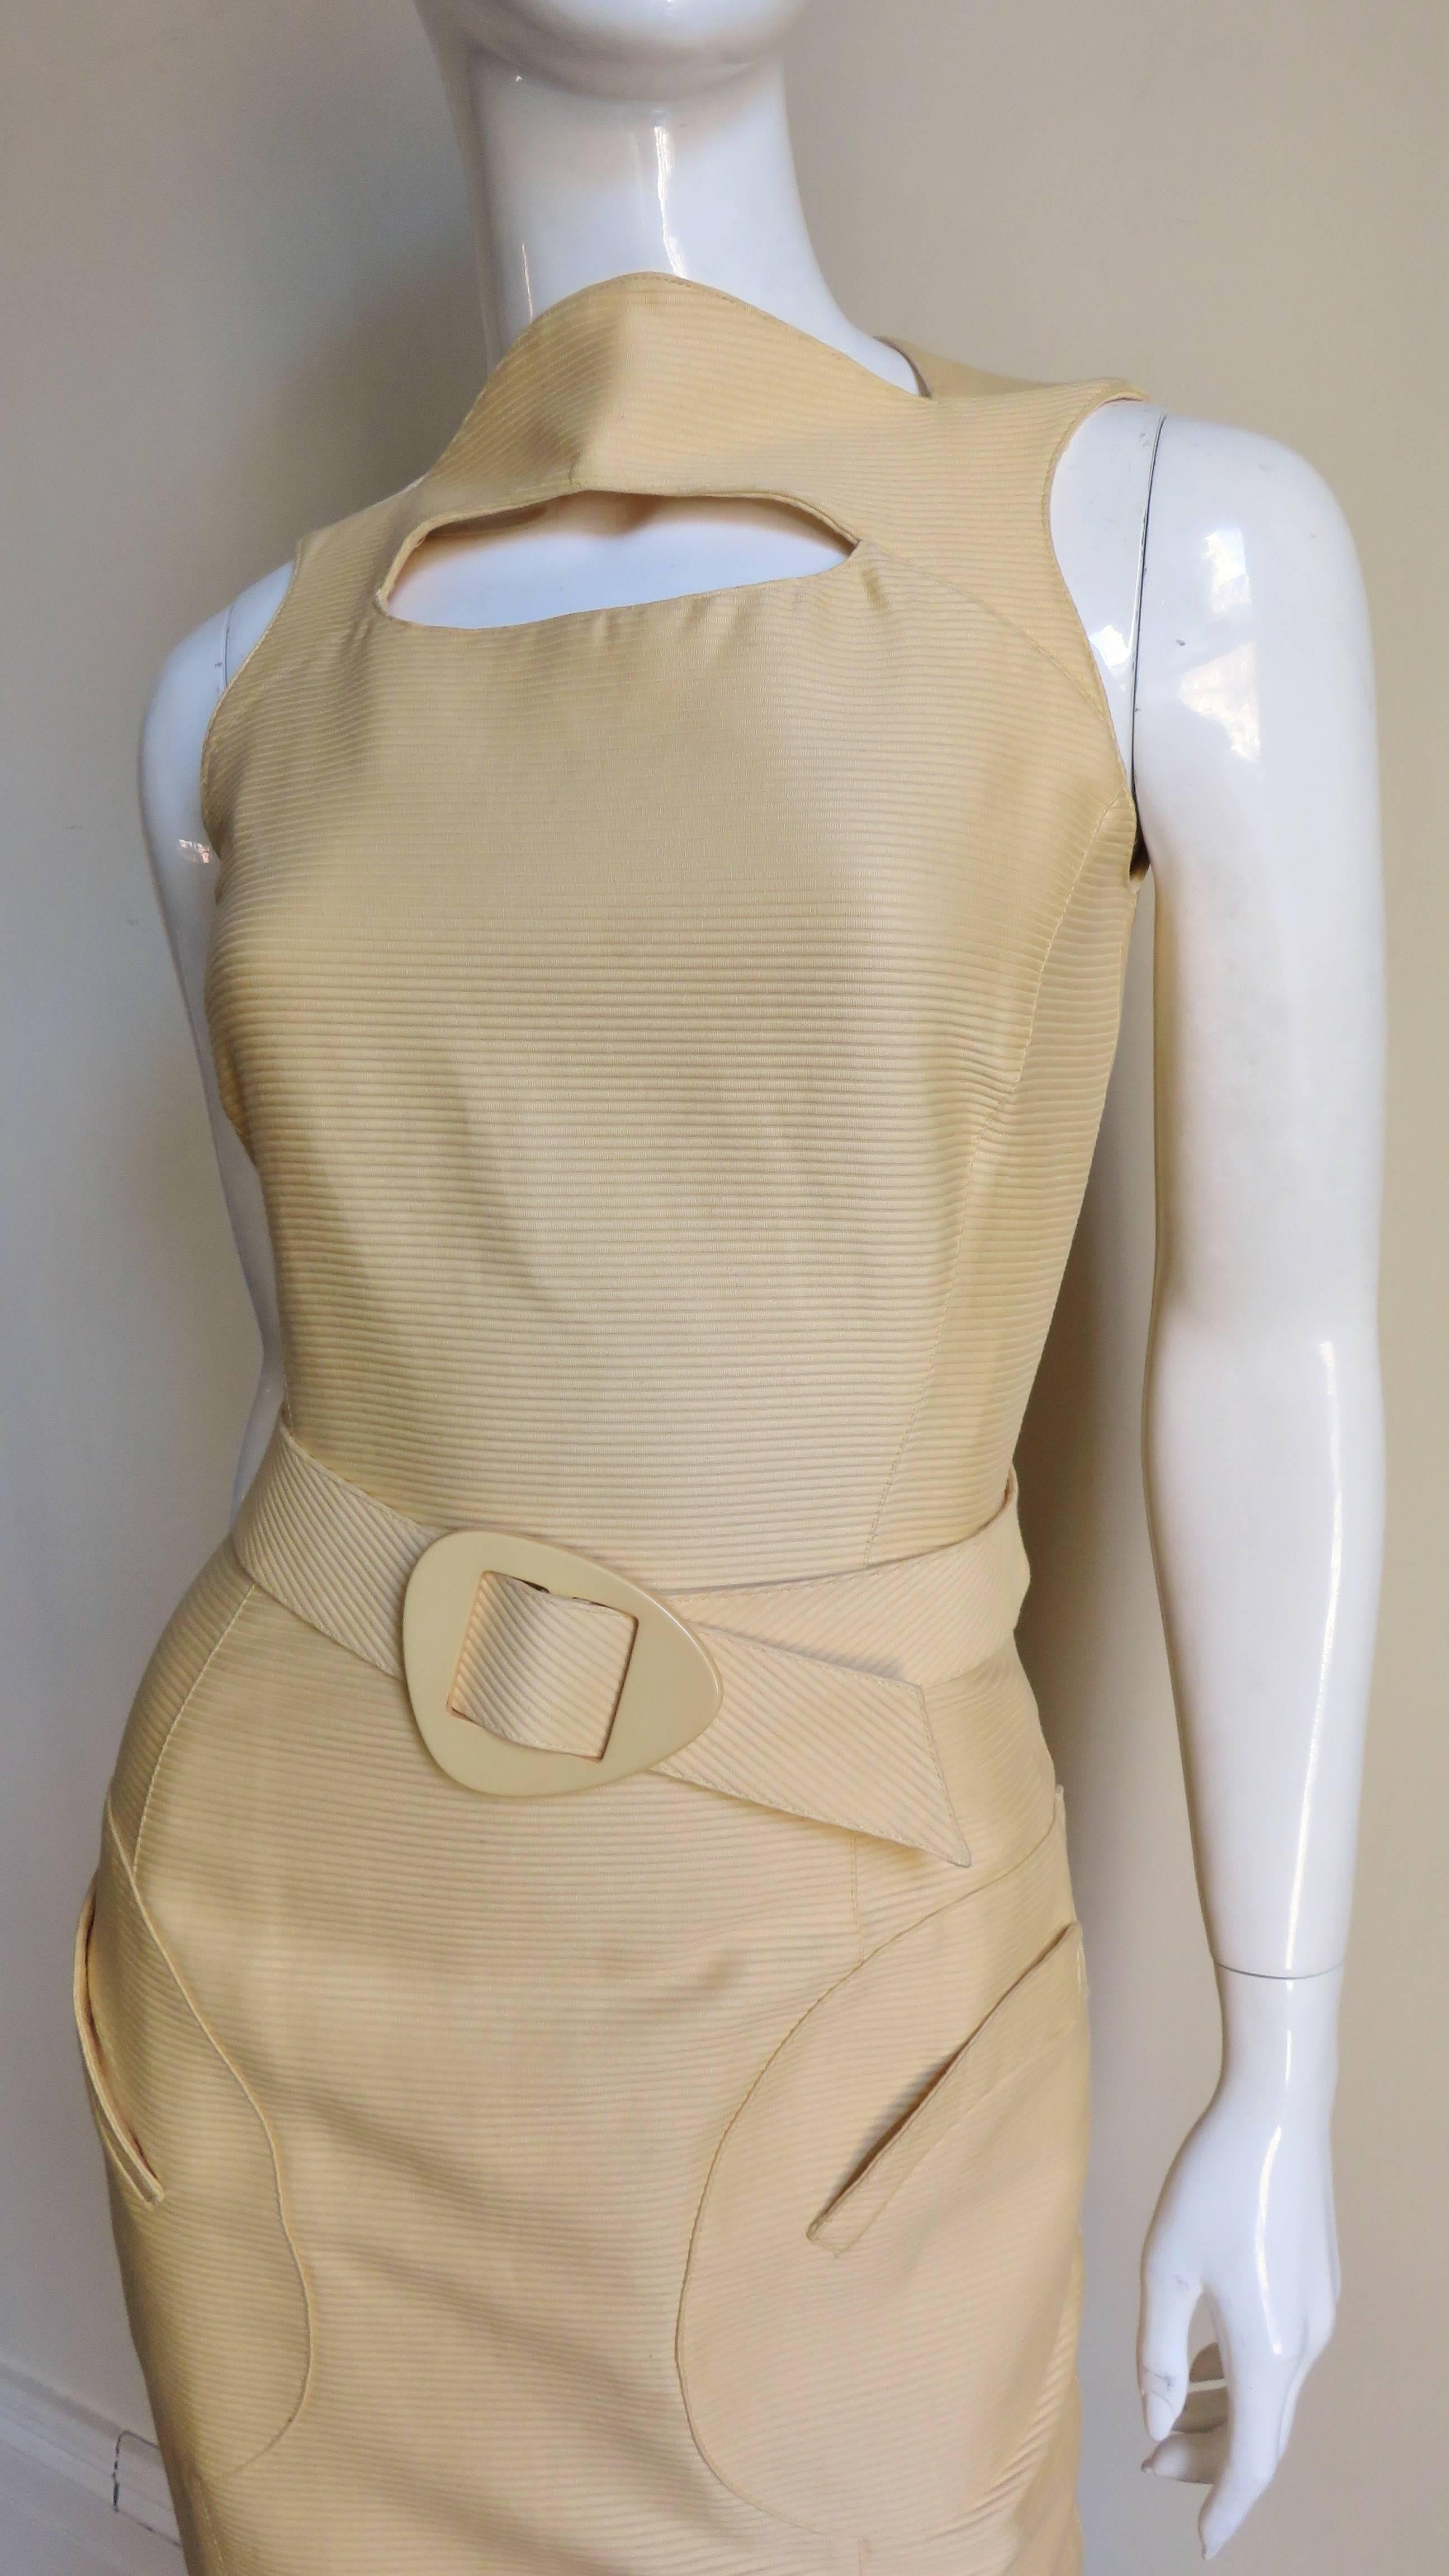 Ein buttergelbes Seidenkleid von Thierry Mugler.  Es hat einen Bateau-Ausschnitt mit einem ovalen Ausschnitt darunter, Prinzessnähte für eine gute Passform und 2 aufgesetzte Taschen vorne. Das Kleid wird mit einem passenden Gürtel mit gelber